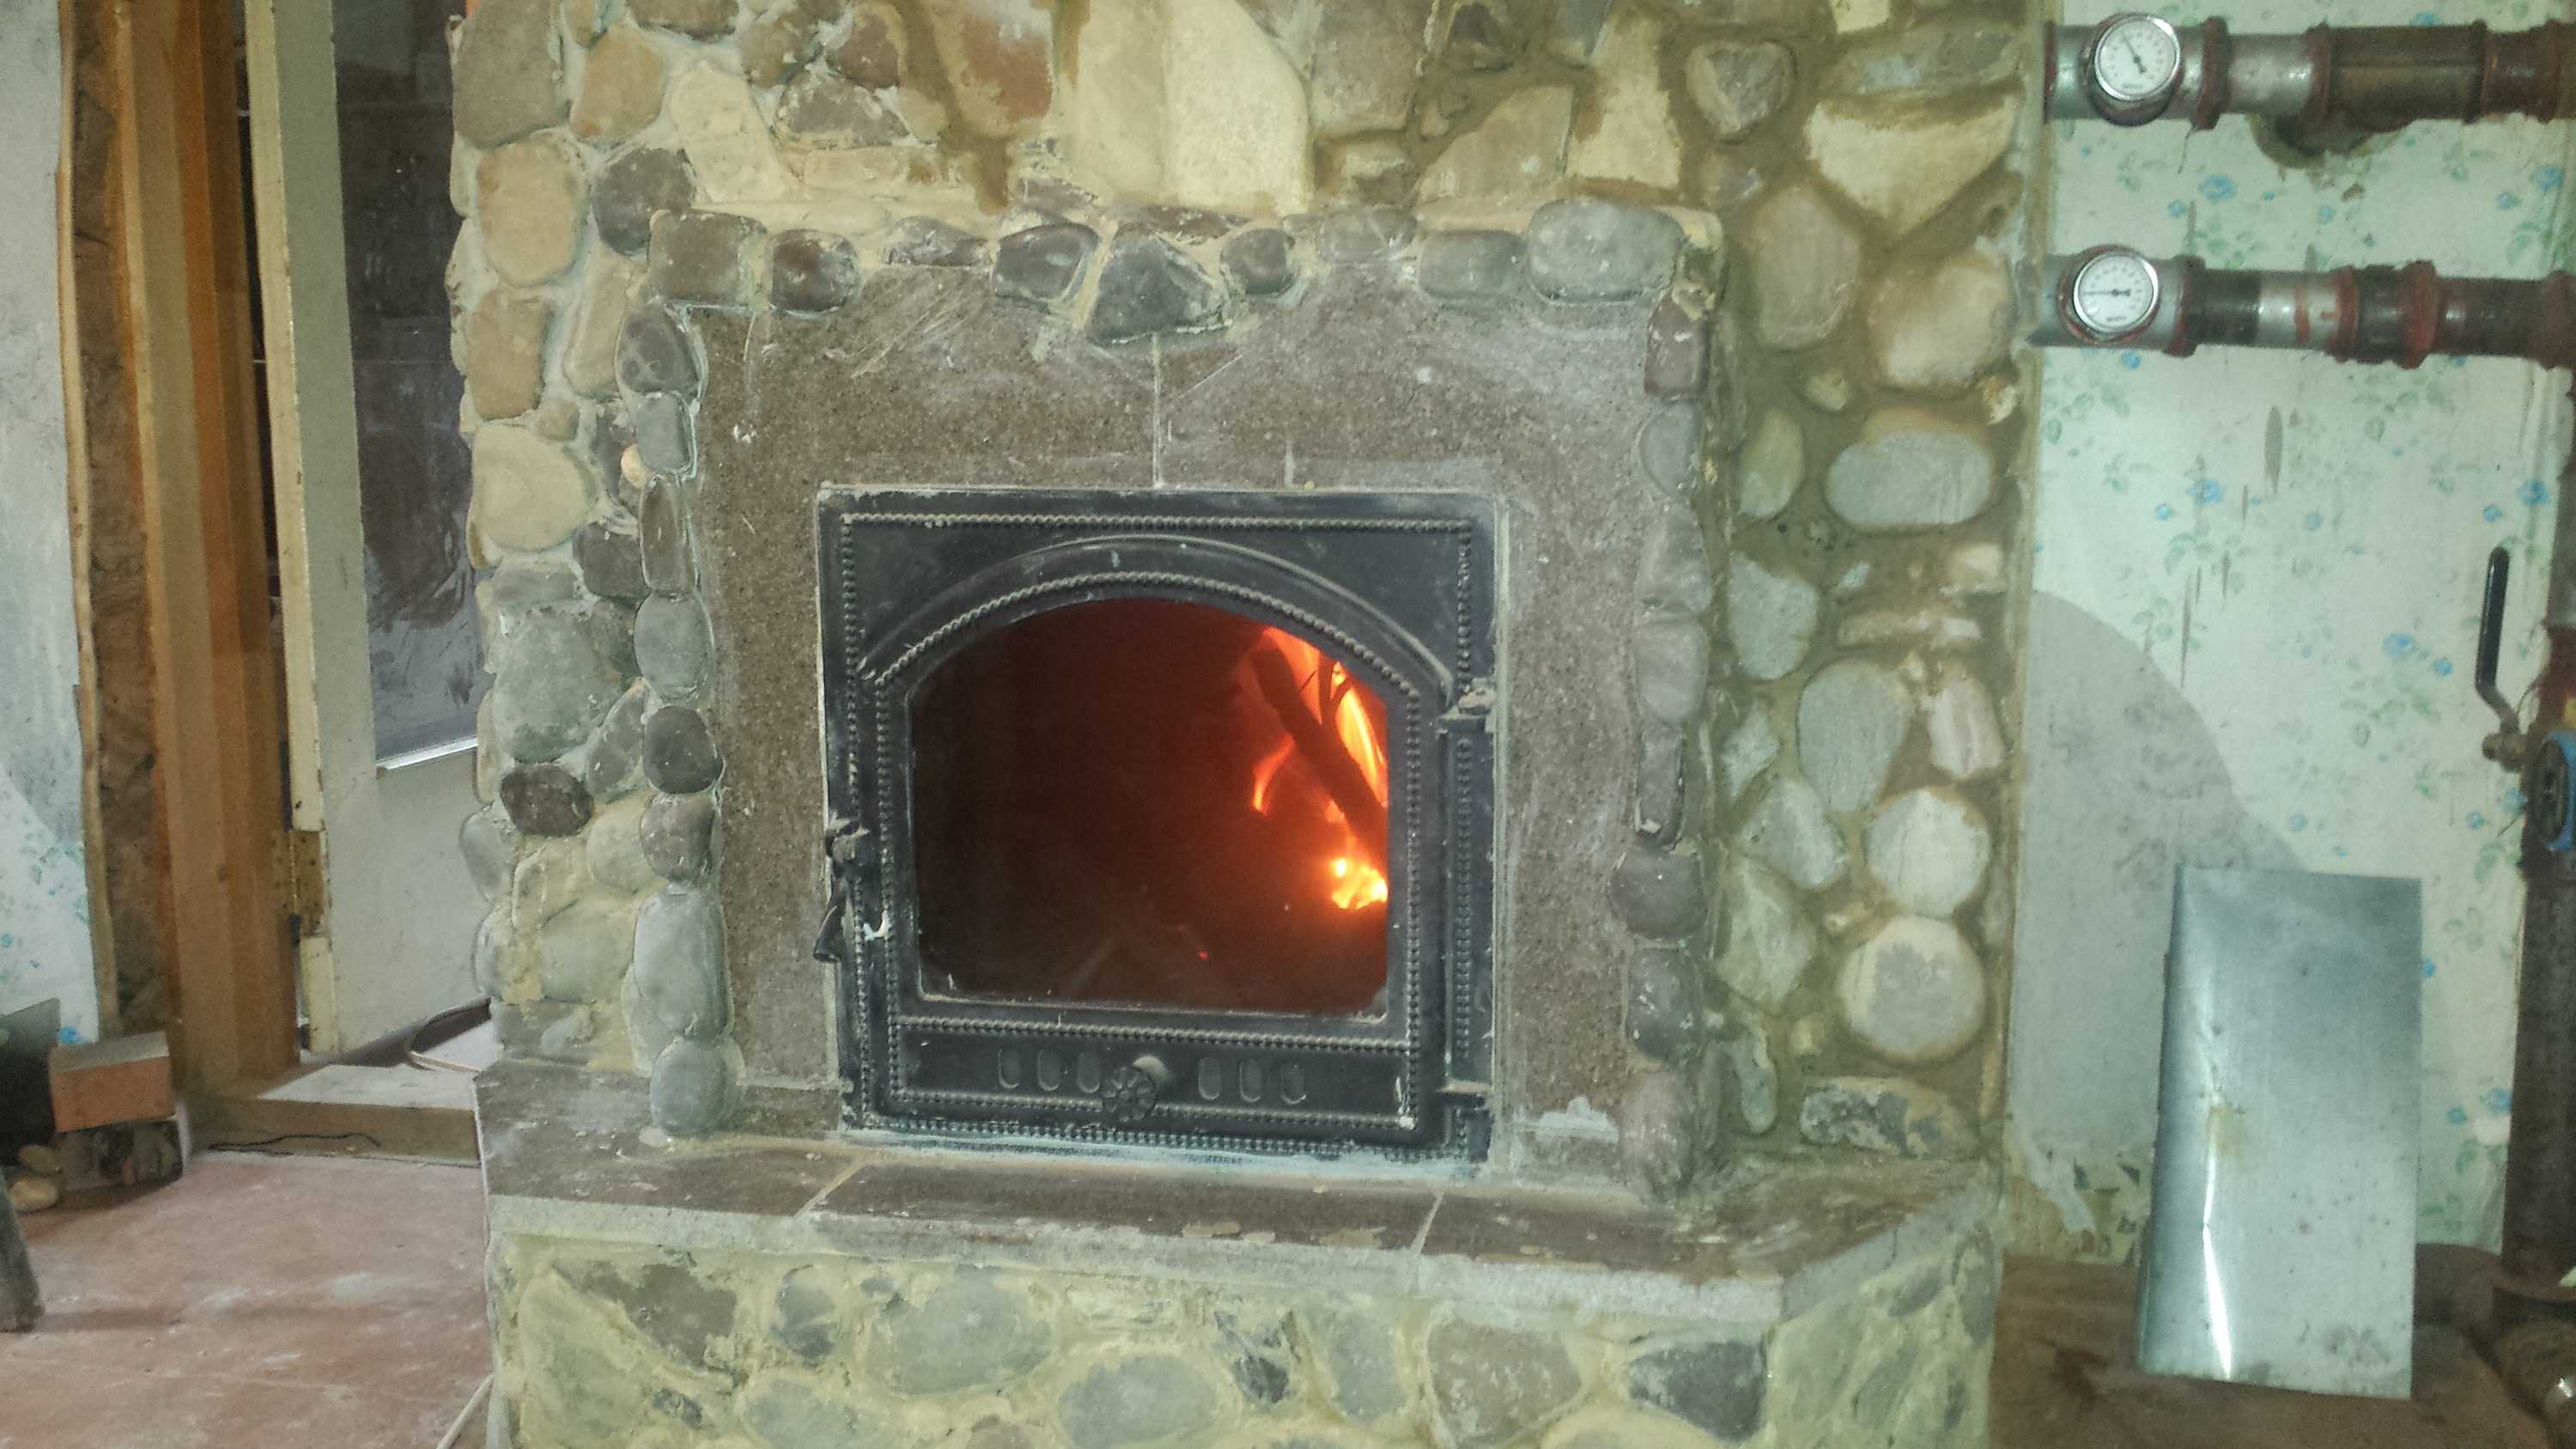 Отопление для дома – просто, быстро и красиво. чем хороша установка печи-камина?